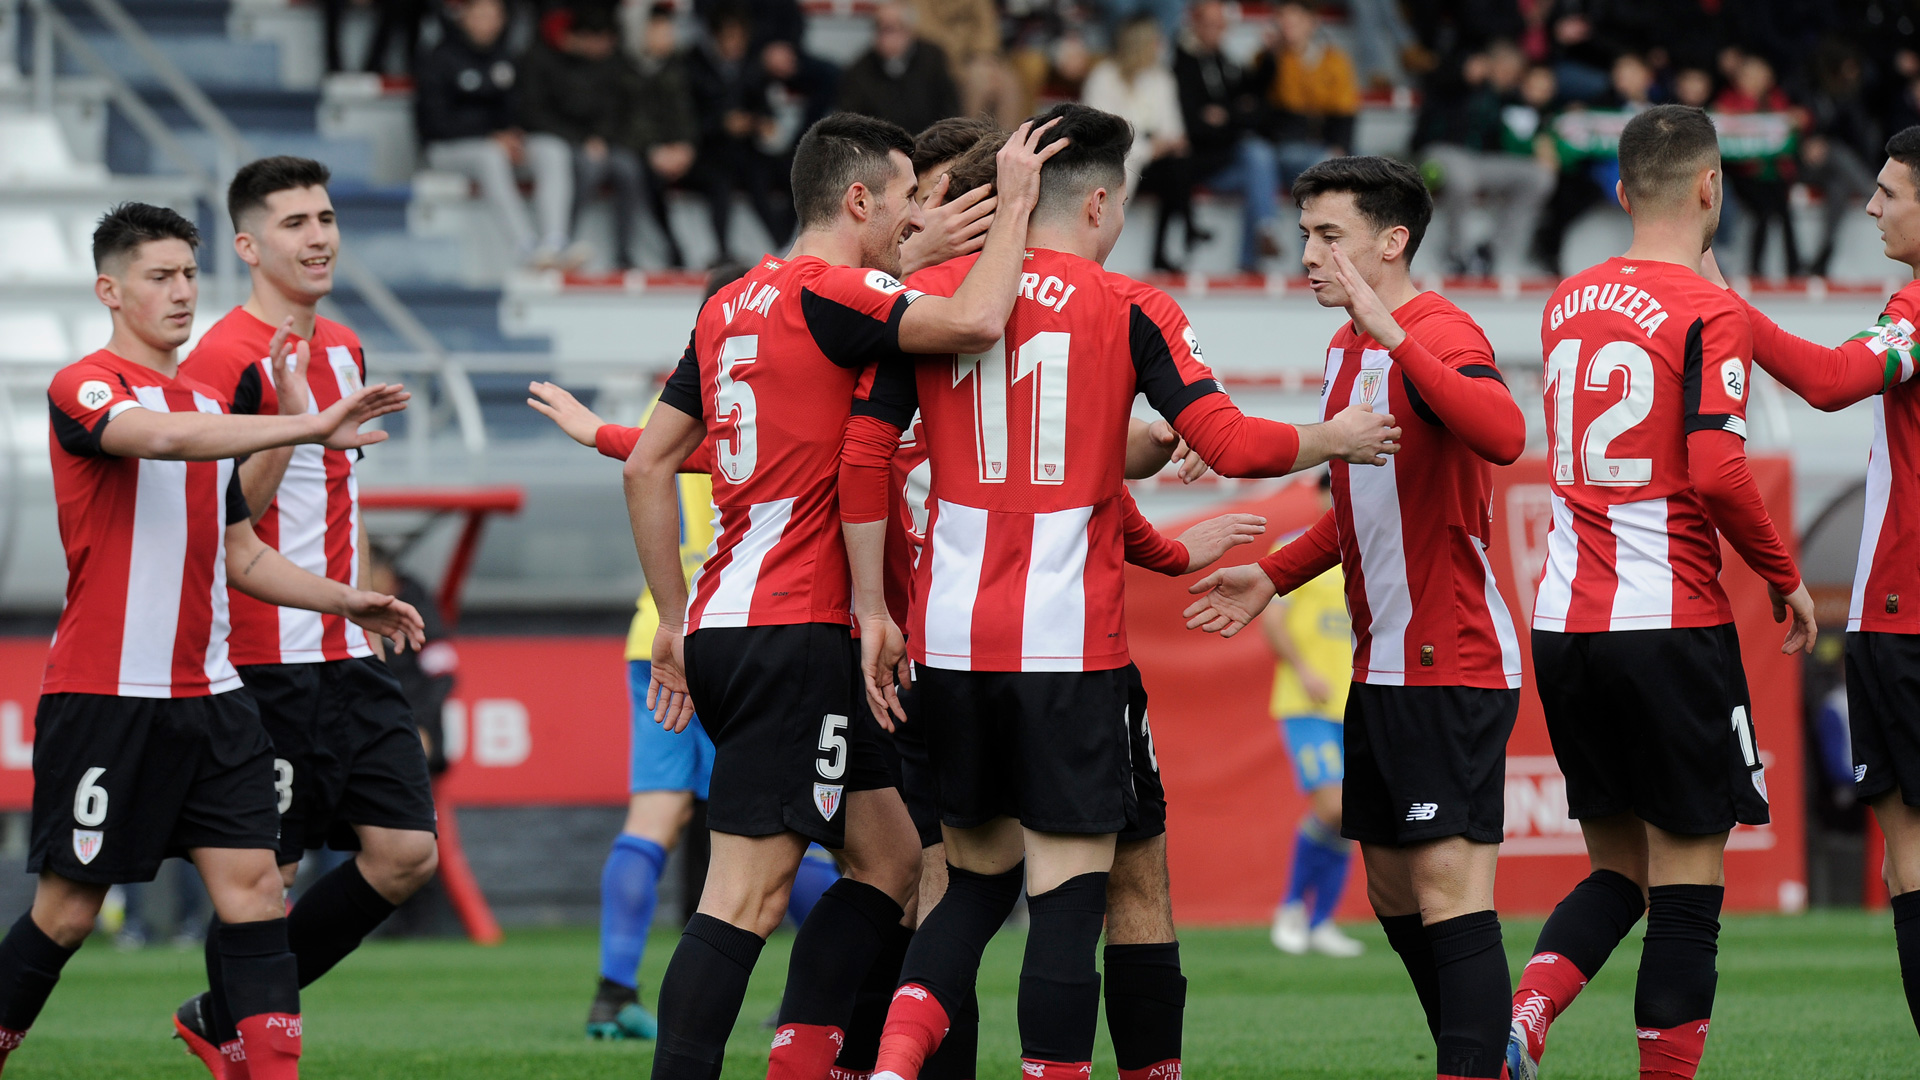 Ezagutu Bilbao Athleticen playoffetako balizko aurkariak